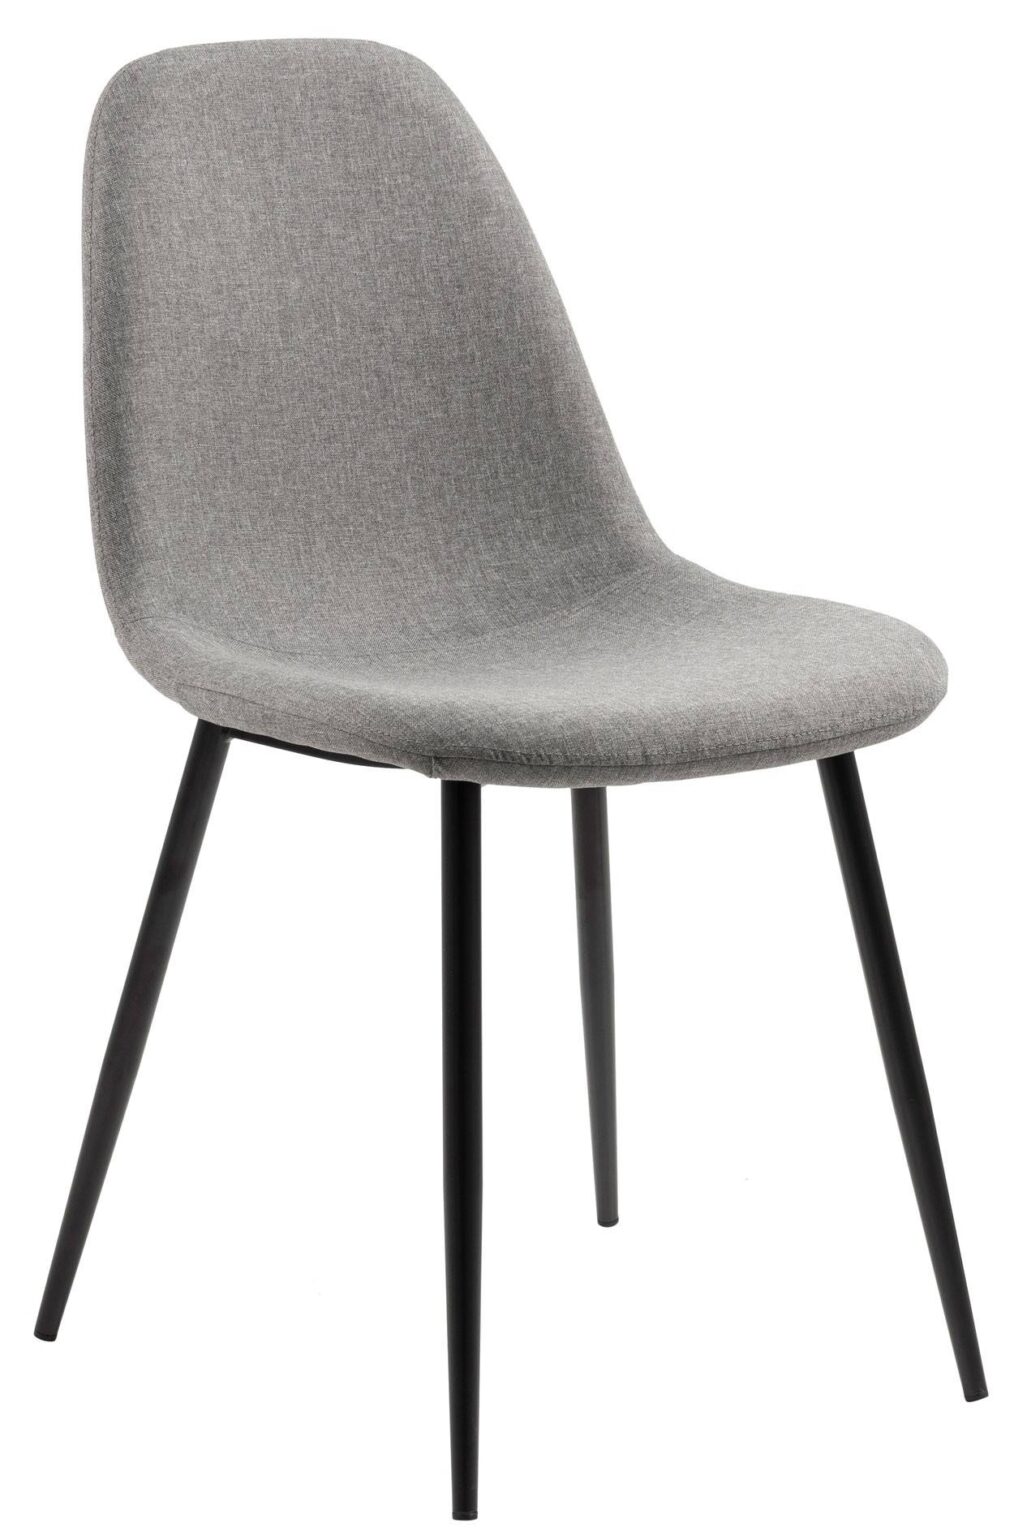 krzeslo-lombi-grey_1.jpg